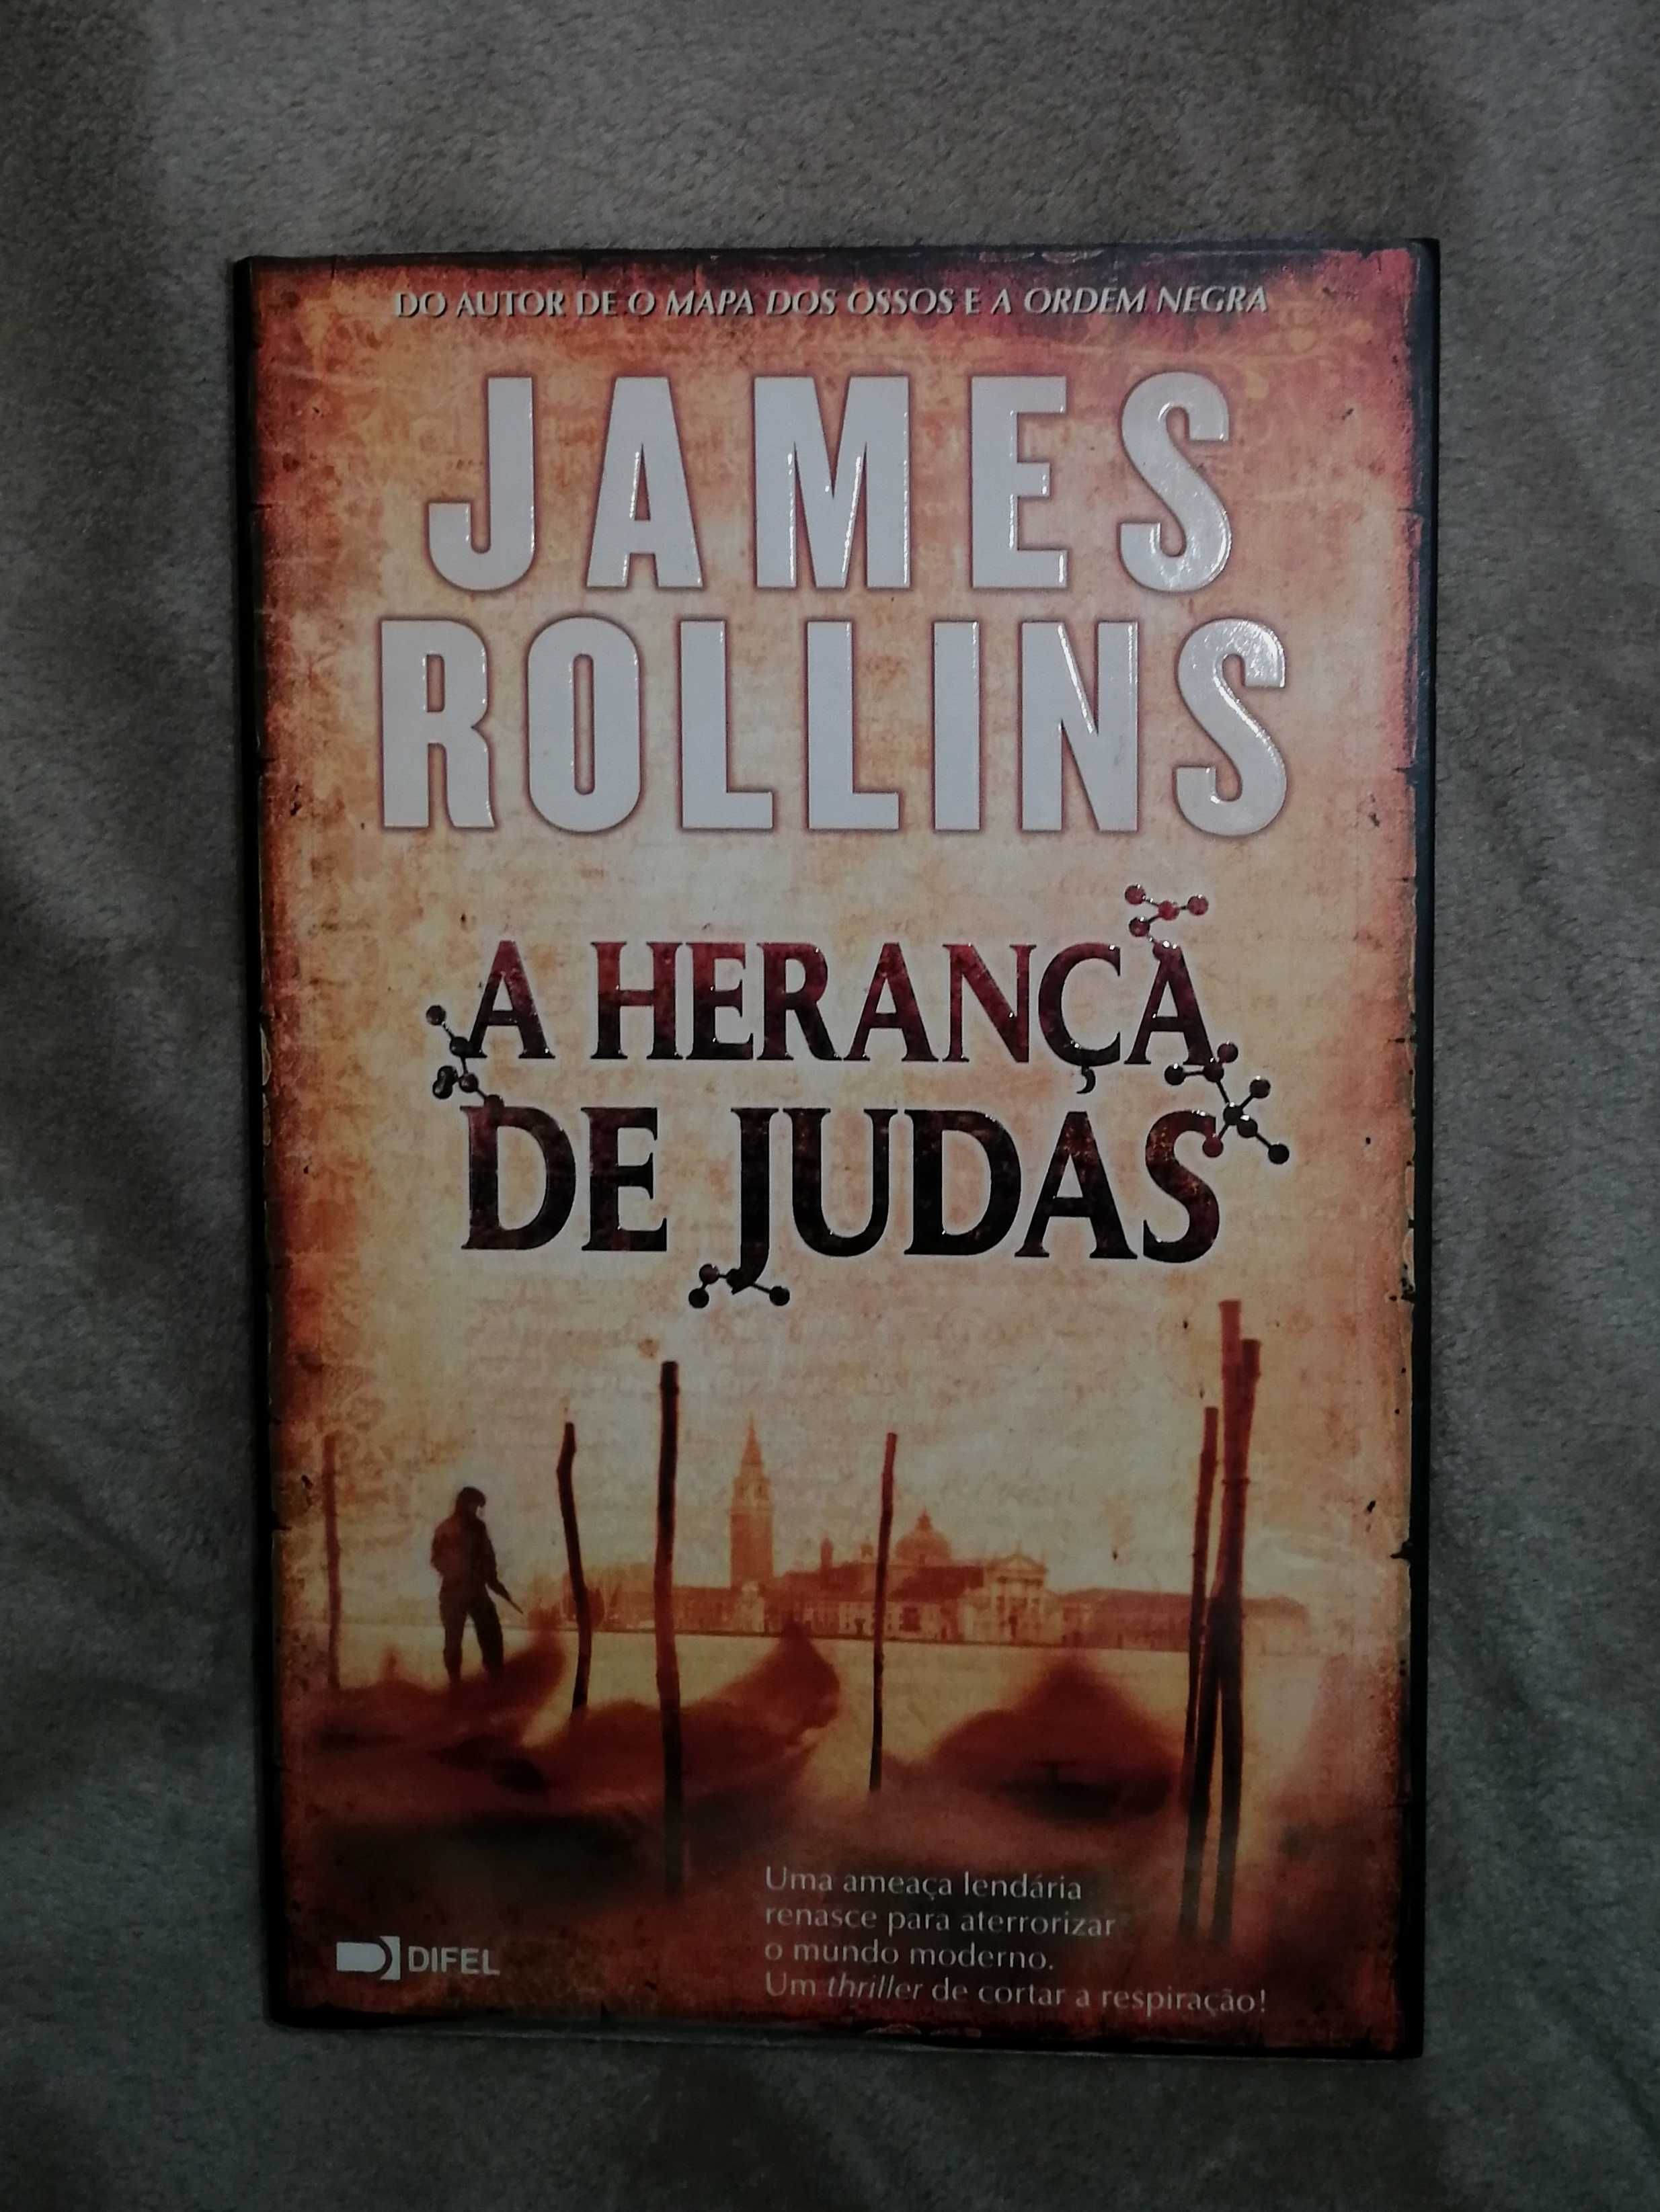 A Herança de Judas - James Rollins